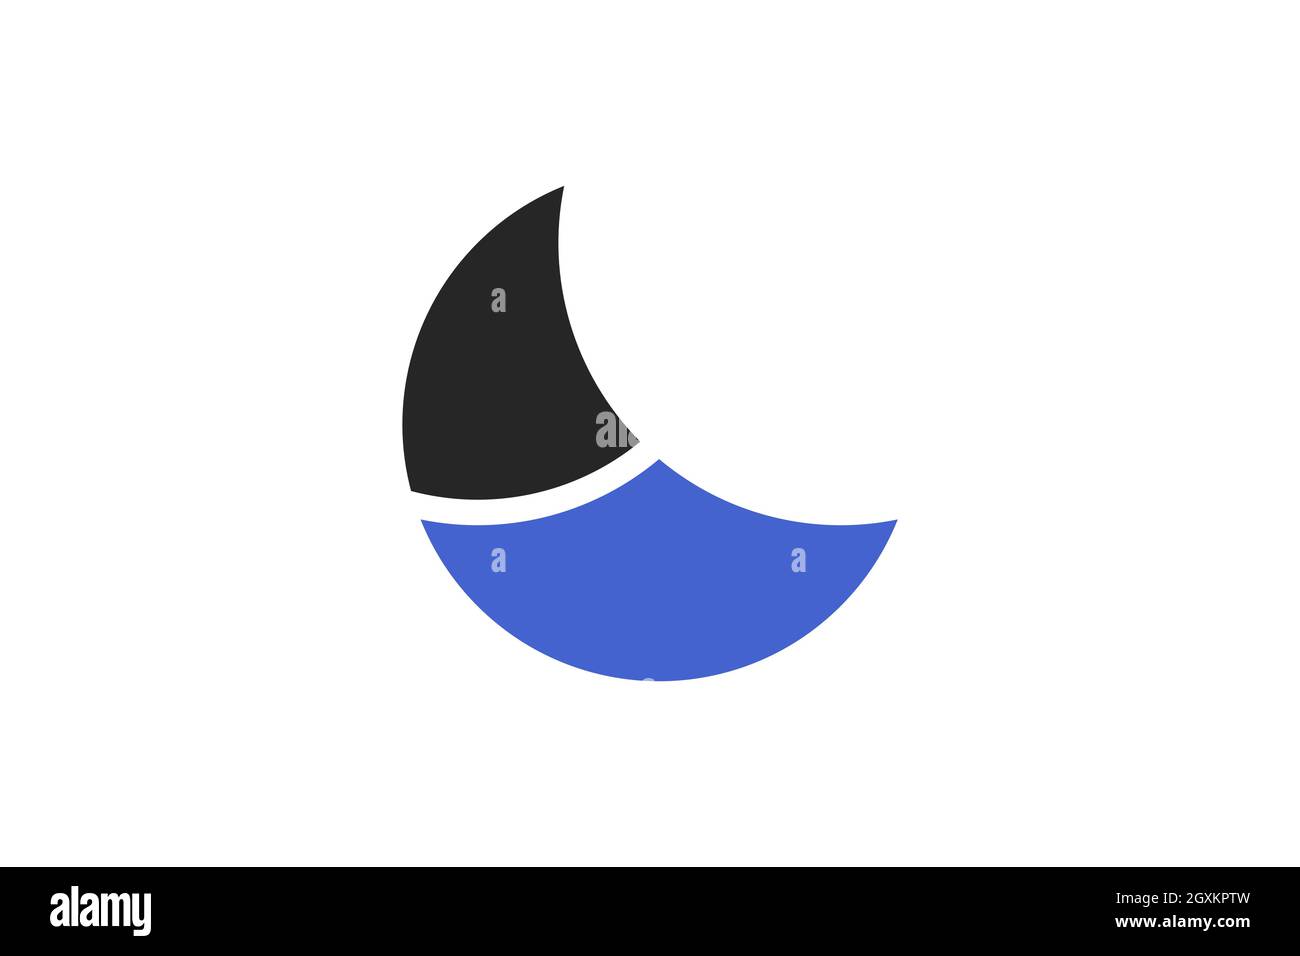 Modello concettuale con logo Crescent moon Ocean. Combinazione di onda d'acqua e barca a vela, a forma di mezzaluna. Moderno semplice e minimalista. Illustrazione Vettoriale